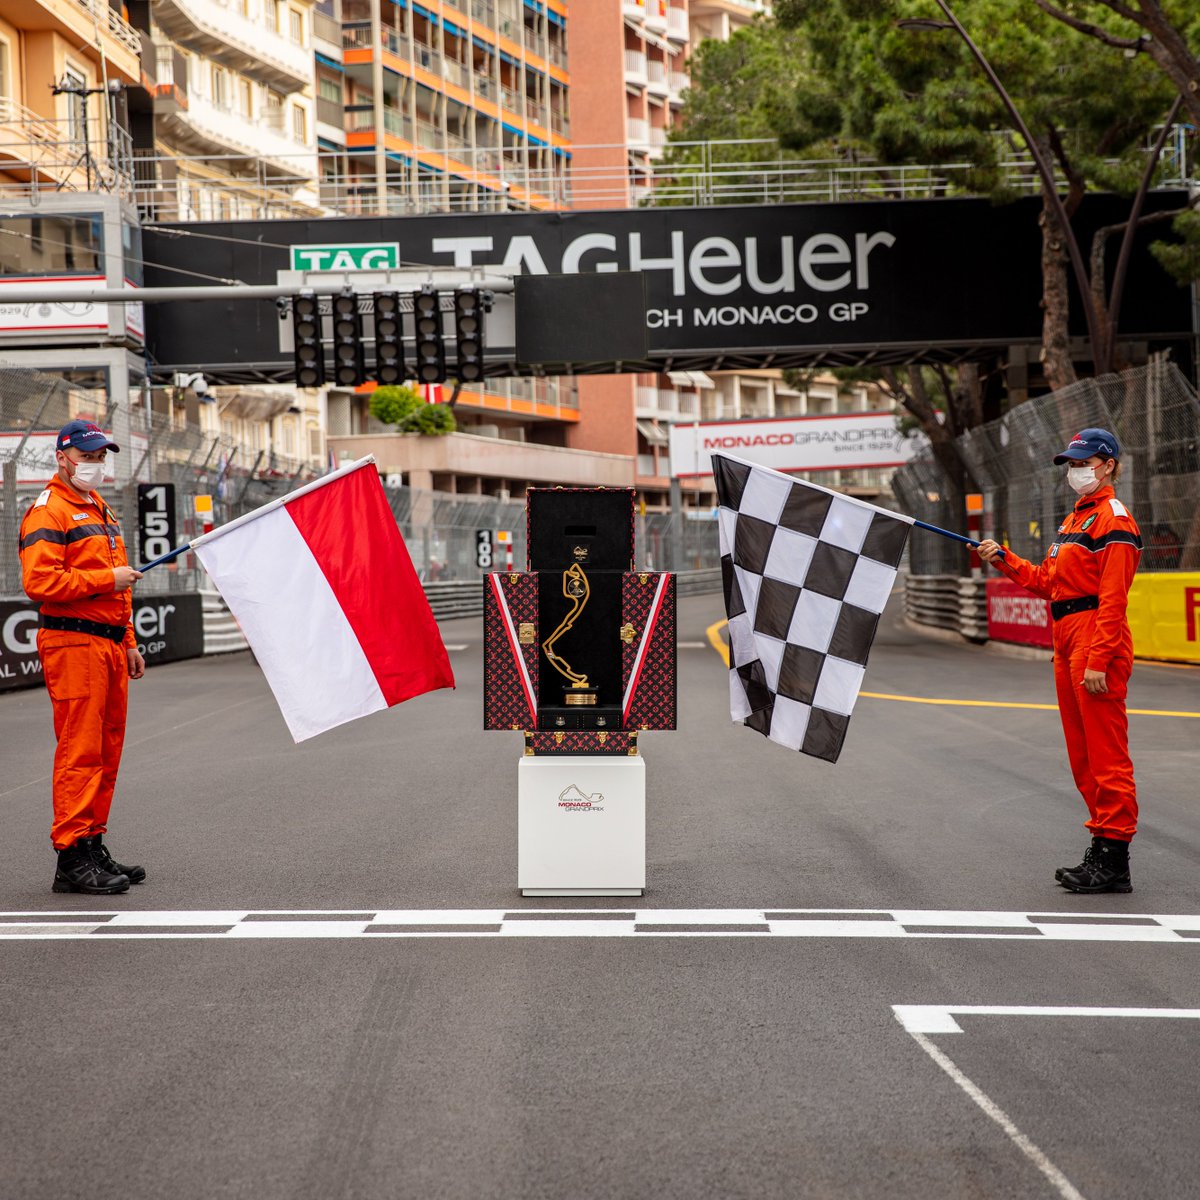 Louis Vuitton Formula 1 Monaco Grand Prix Trophy Case